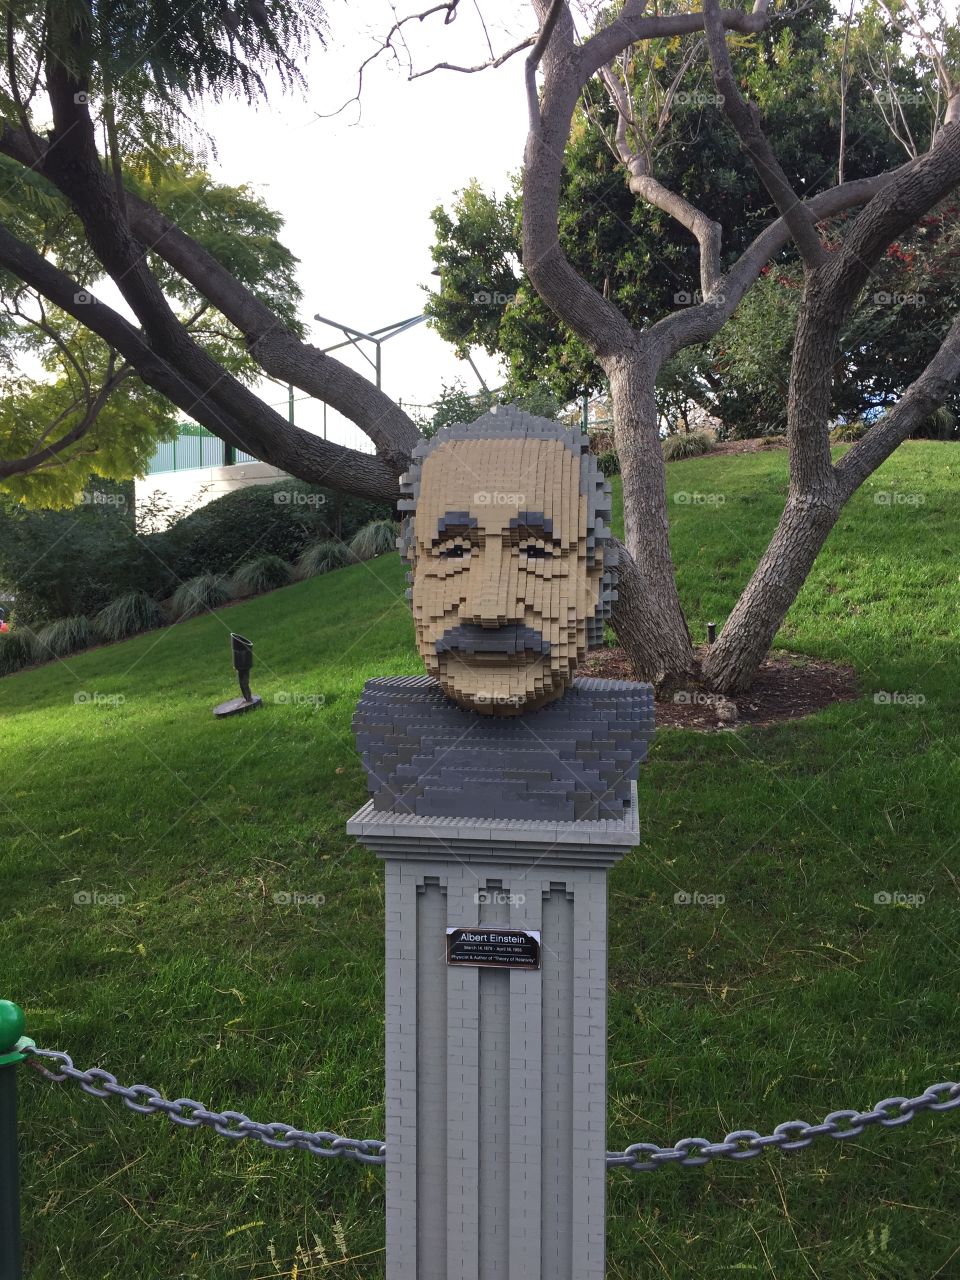 Albert Einstein’s lego